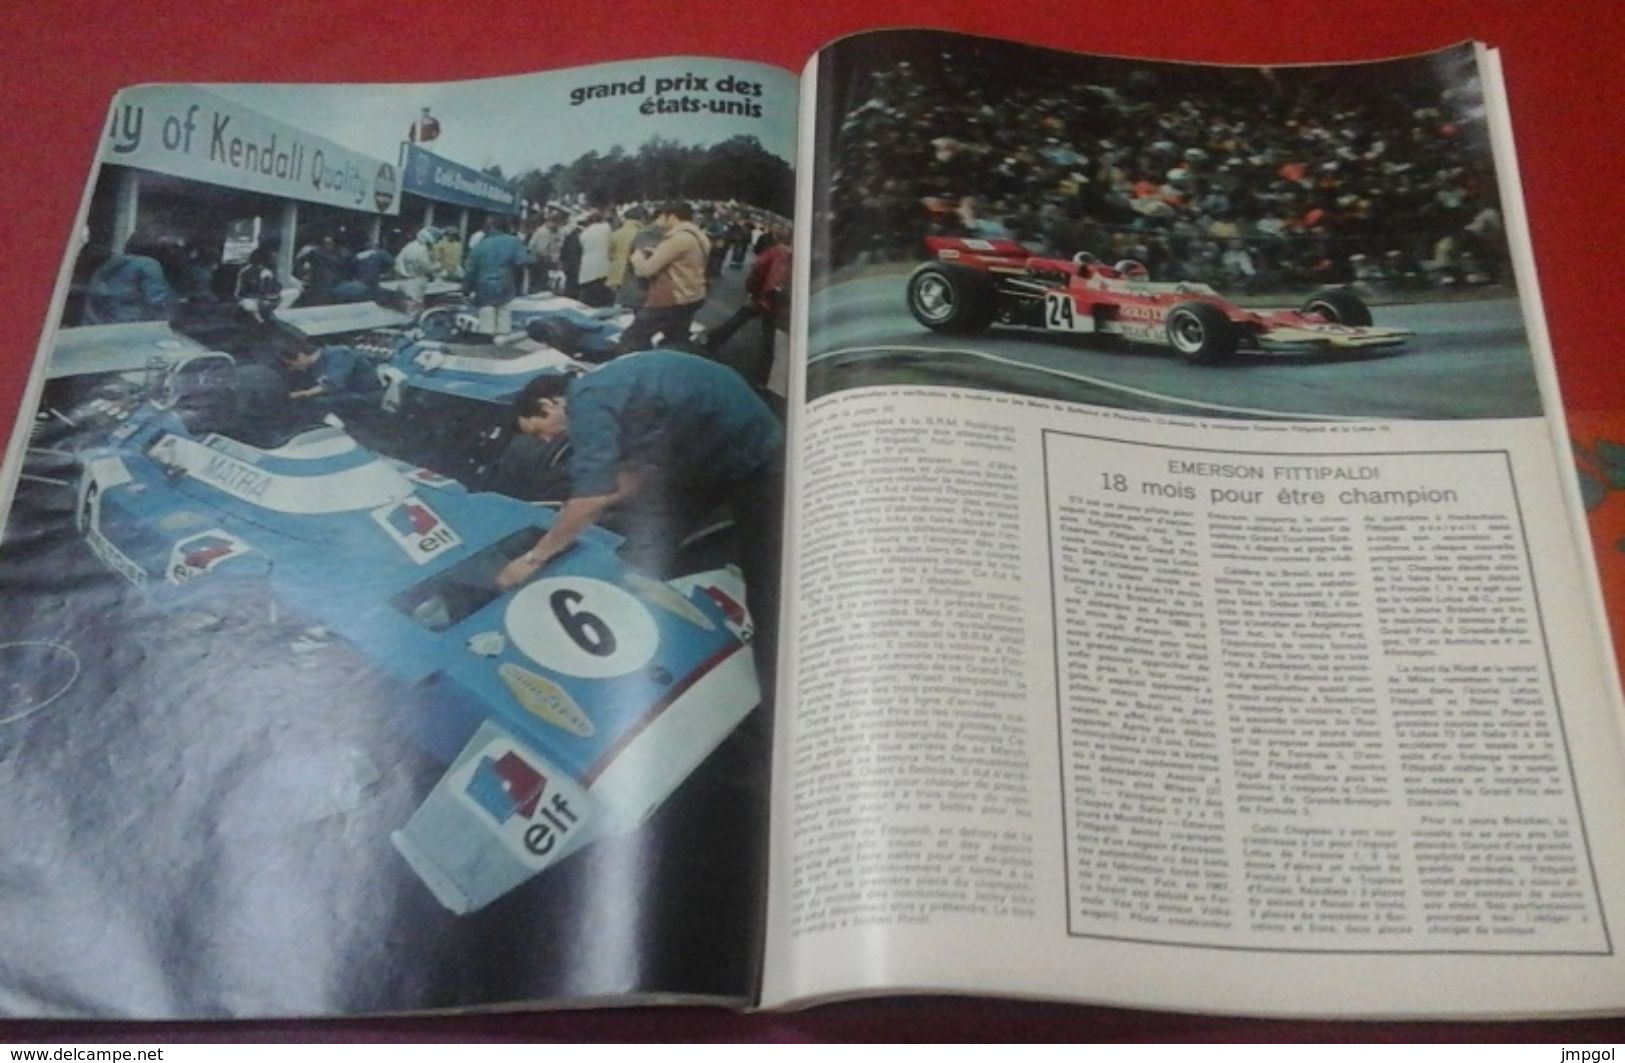 L'Auto Journal n°21 Octobre 1970 Steve Mac Queen, Essai Peugeot 504, les bombes des années 30 Traction, Nervastella...